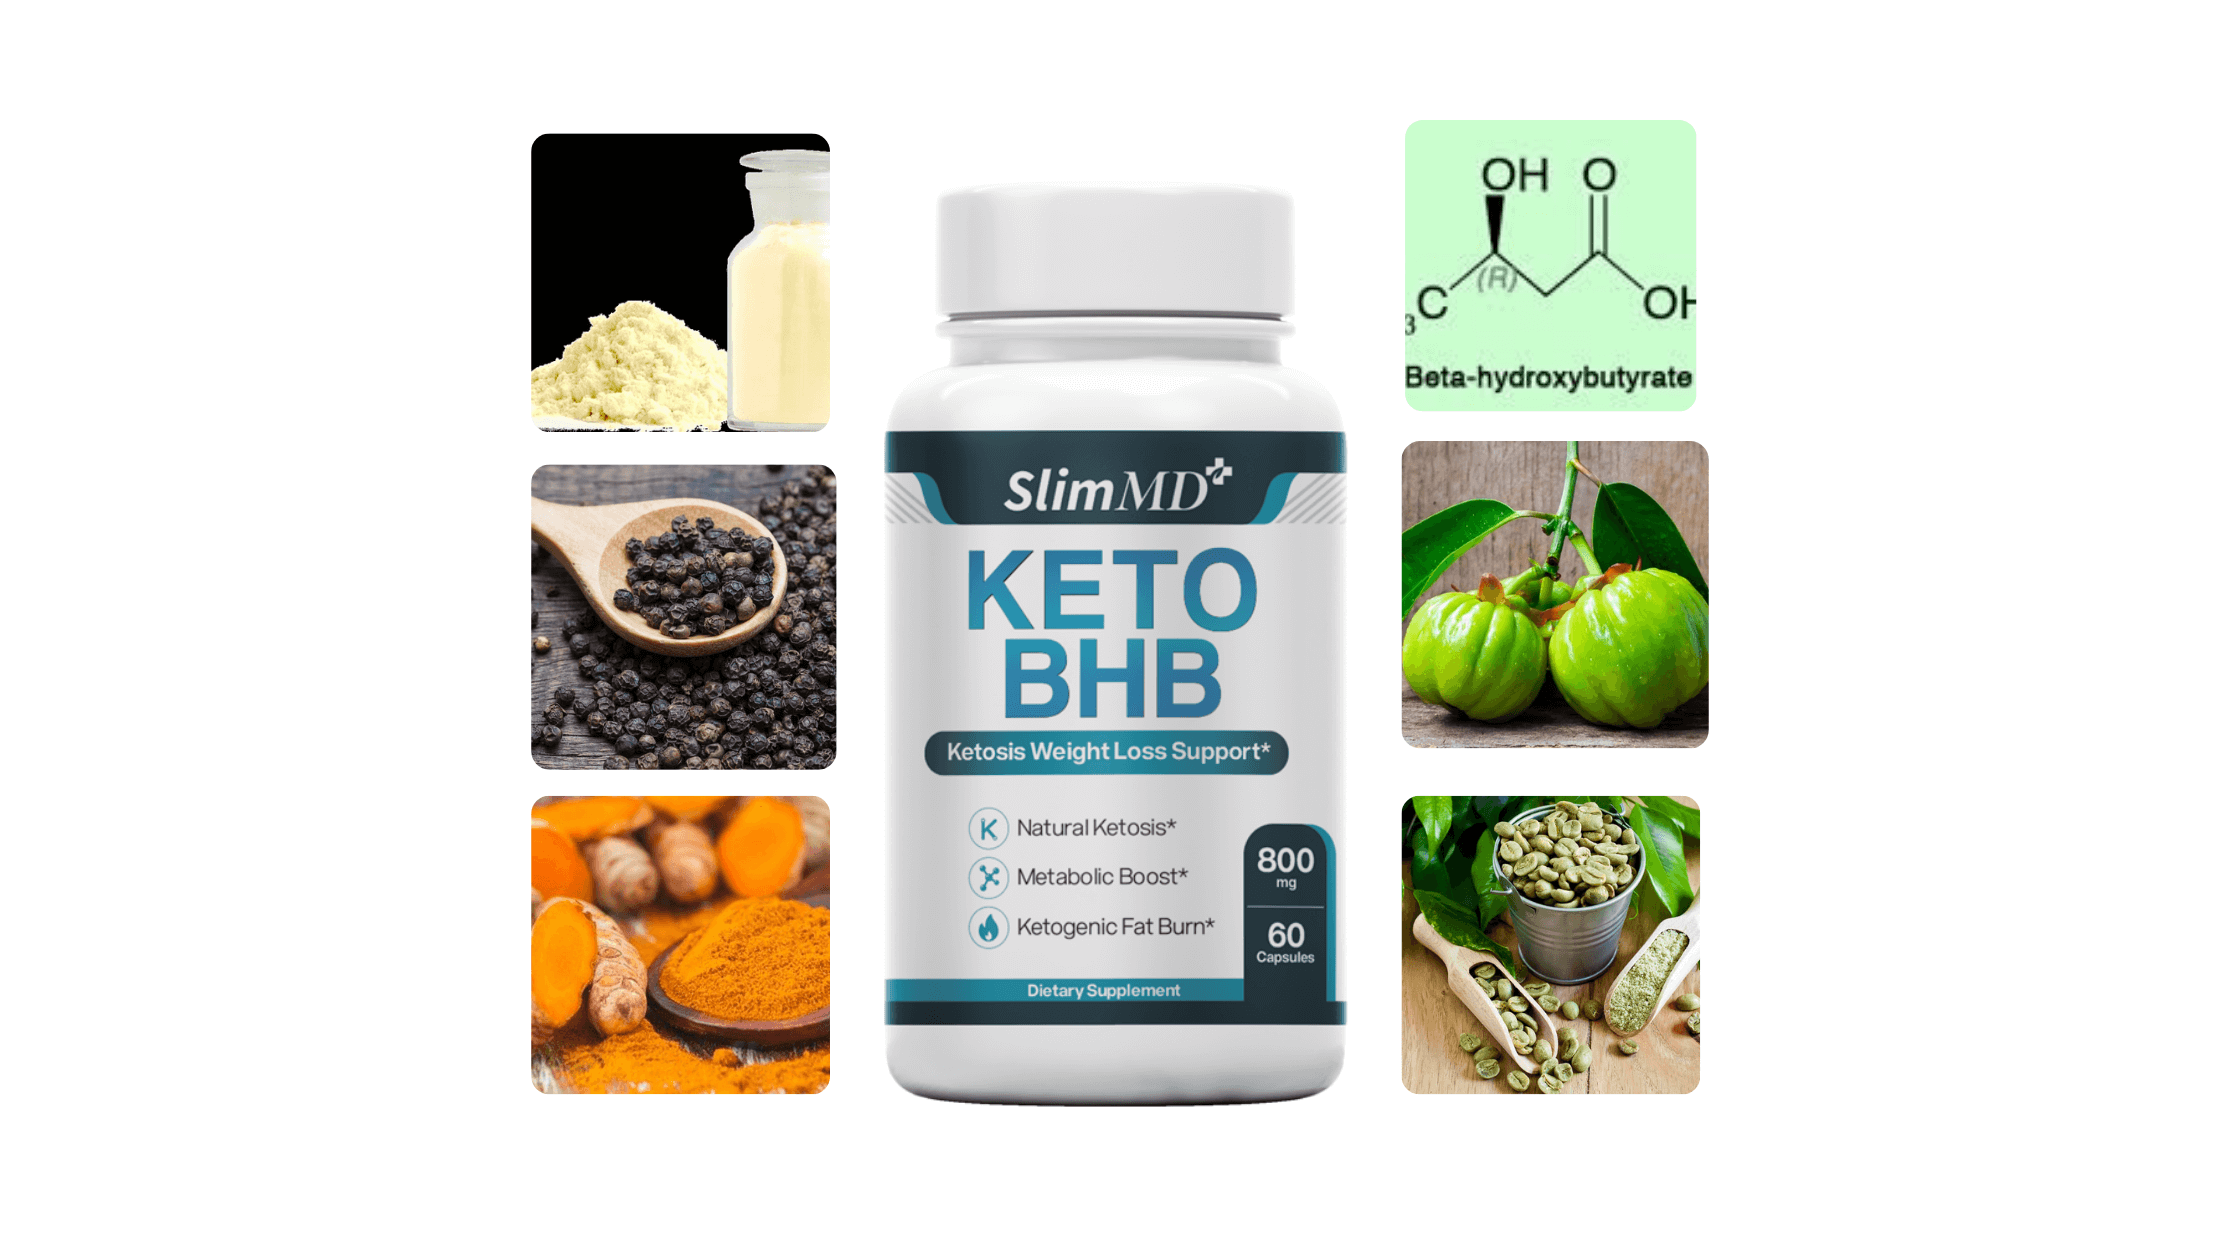 Slim MD Keto BHB Ingredients